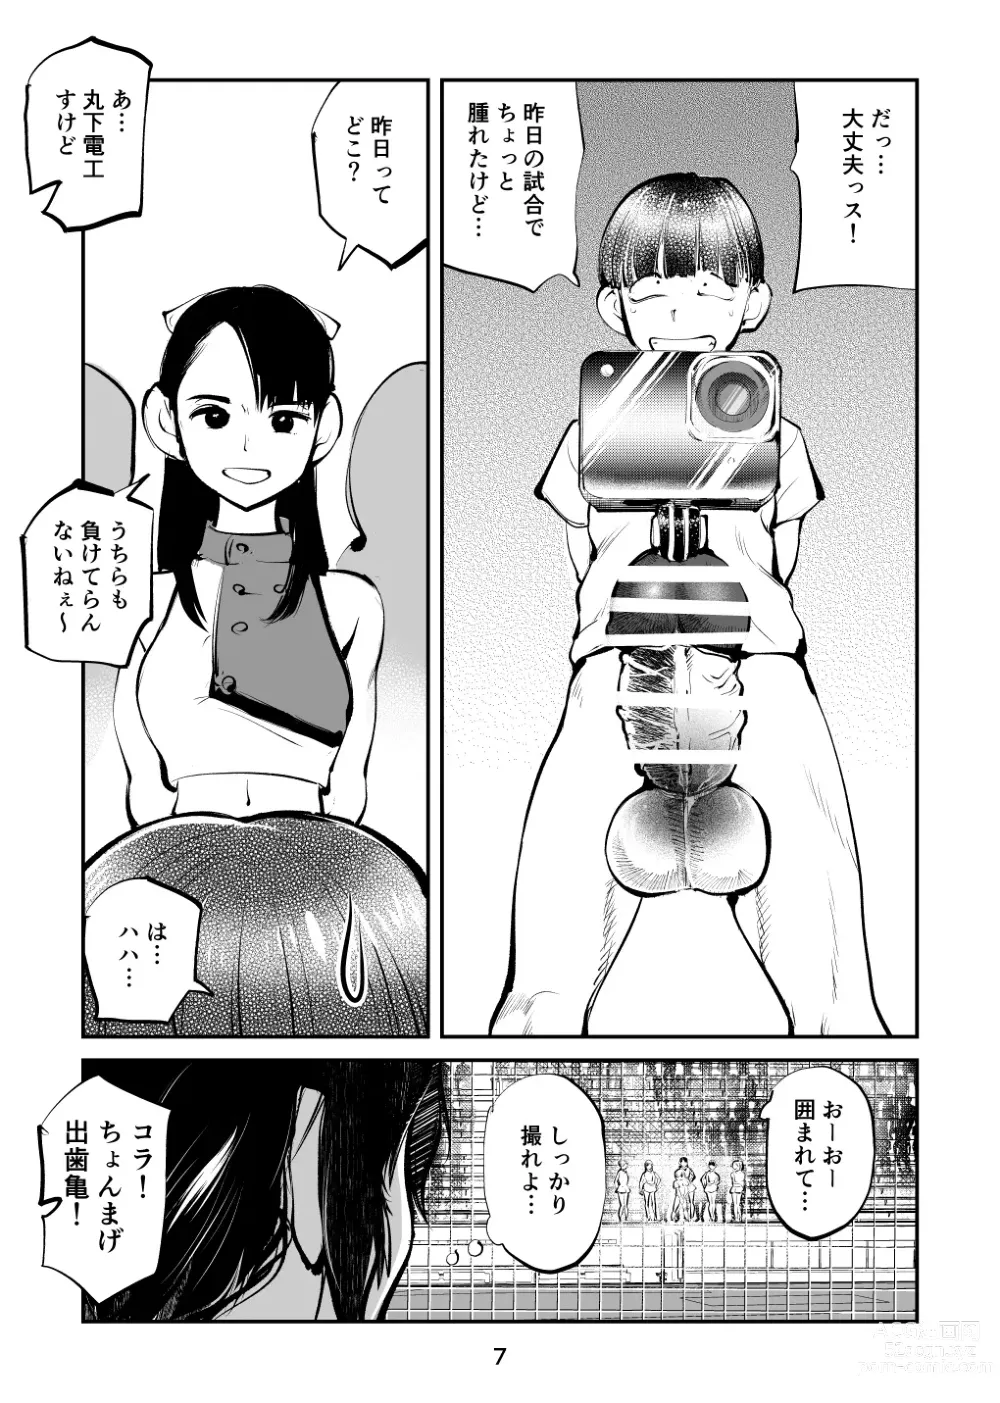 Page 7 of doujinshi Kinkeri Cheer Girl VS Tosatsuma Shakai Hito Cheer Girl-hen